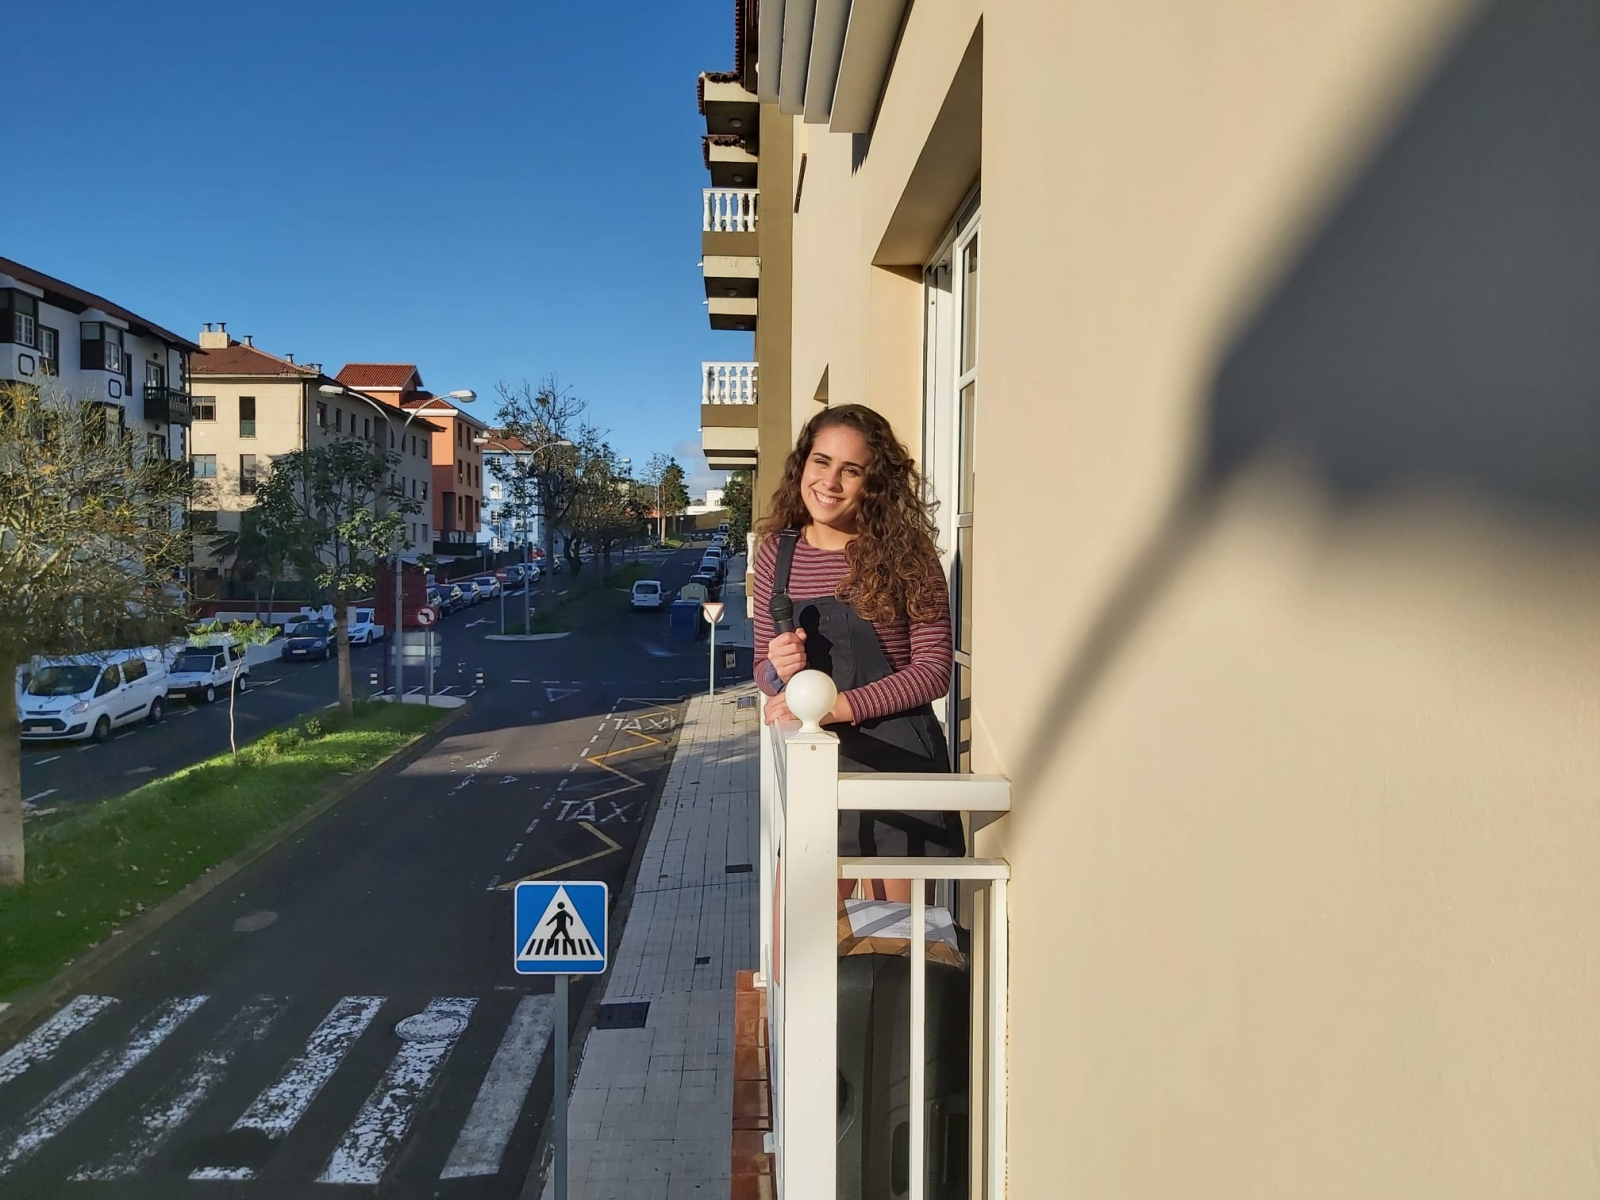 Antonella Vega, cantante de orquesta, se siente muy acogida por sus vecinos cuando les canta canciones para animarles la cuarentena. FOTO: DA